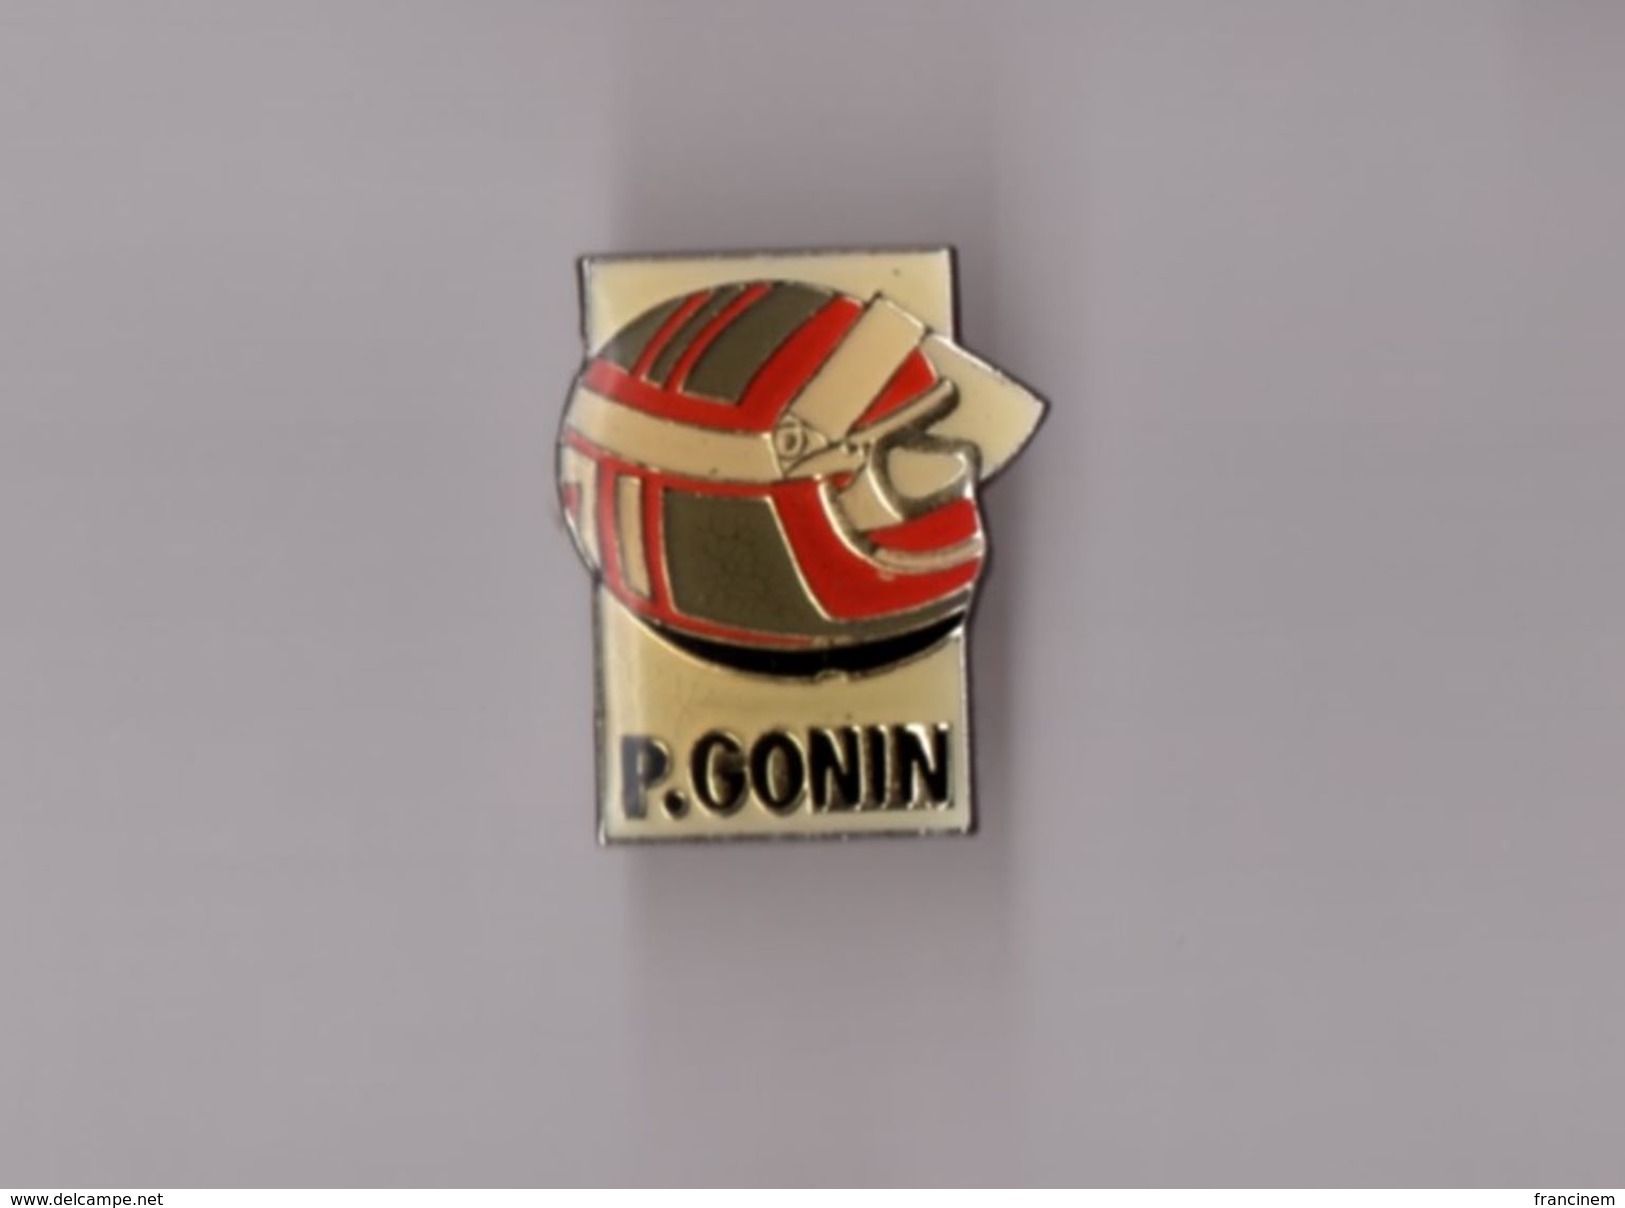 Pin's Formule 1 - Patrick Gonin - Car Racing - F1